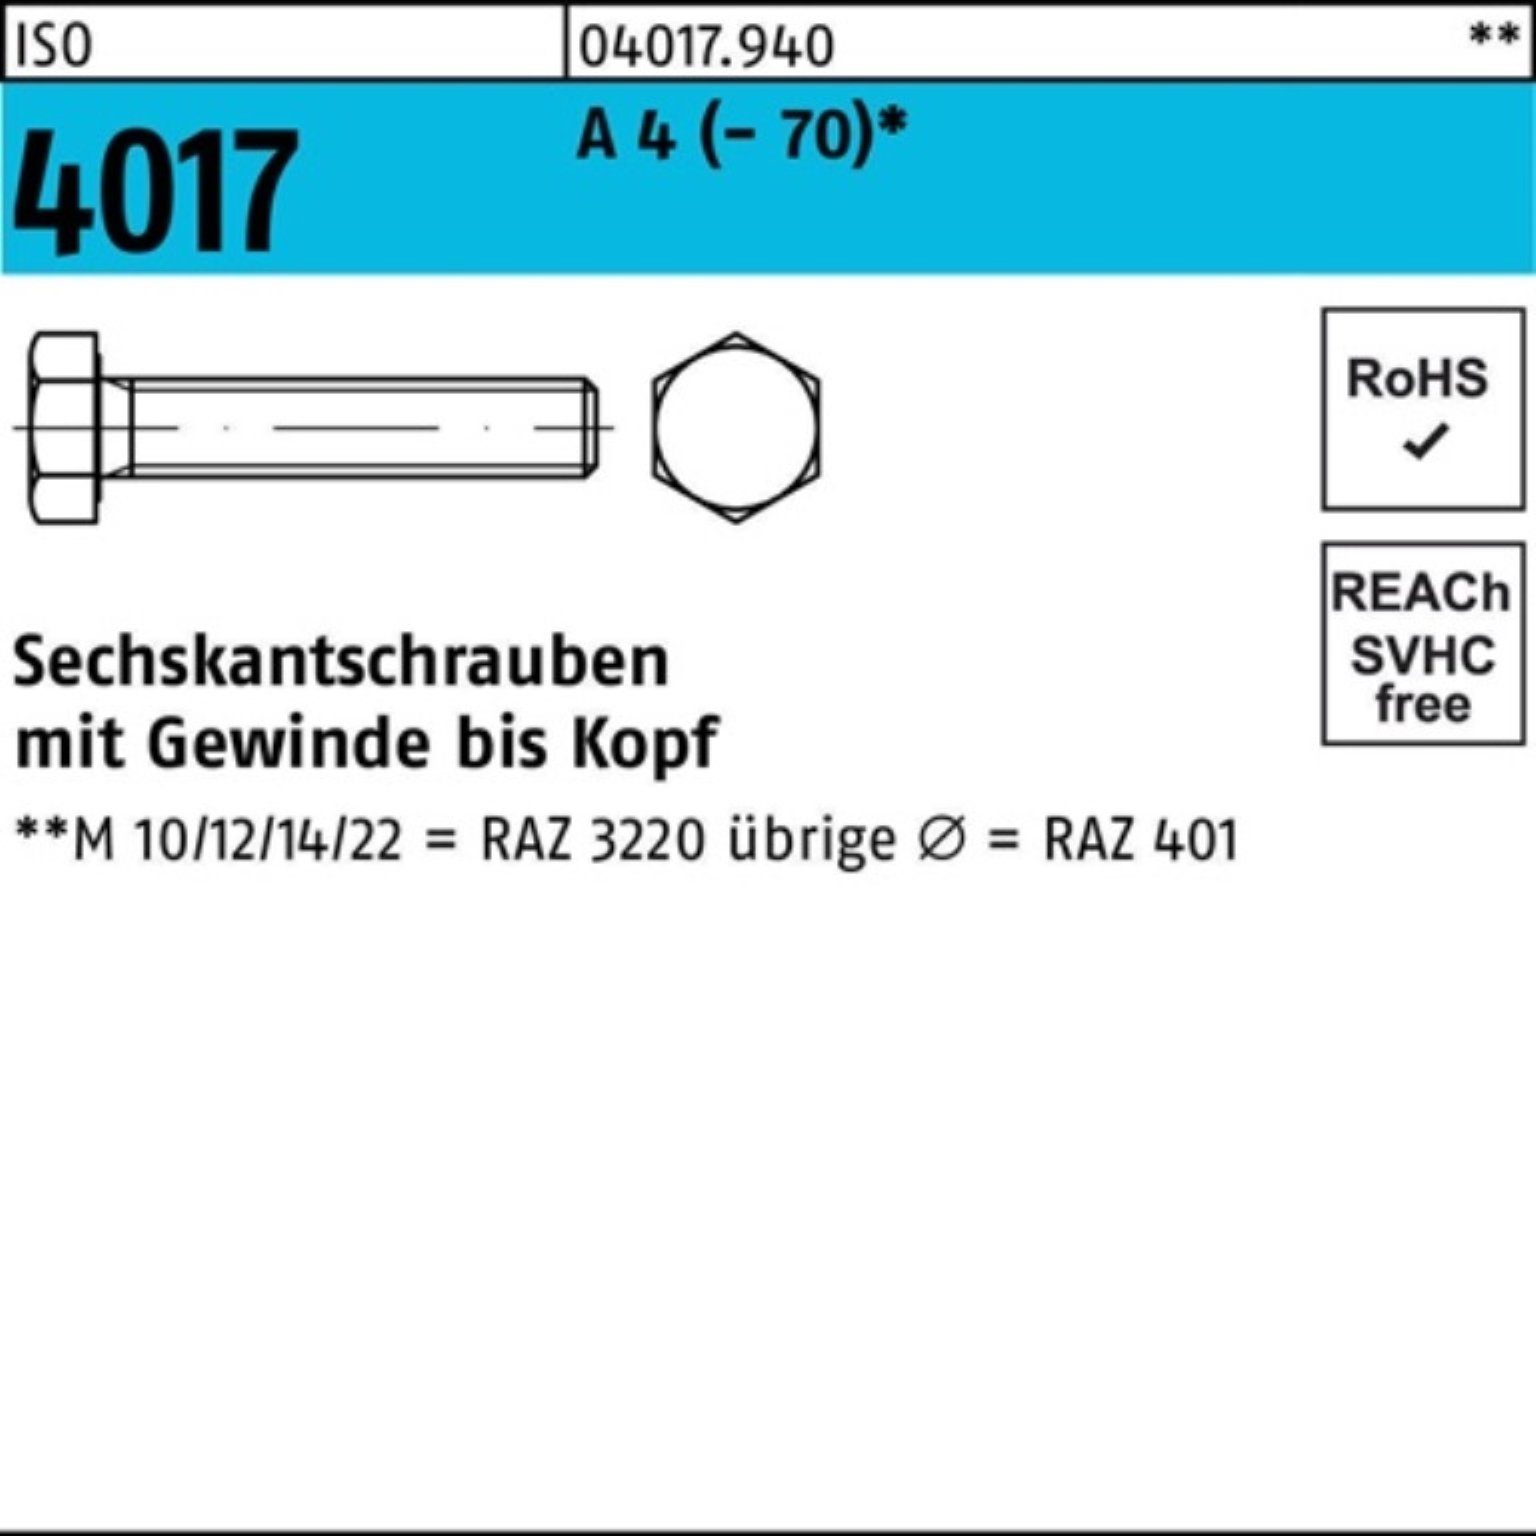 130 Sechskantschraube VG (70) Pack ISO Bufab Sechskantschraube A 100er 4017 1 M27x Stück 4